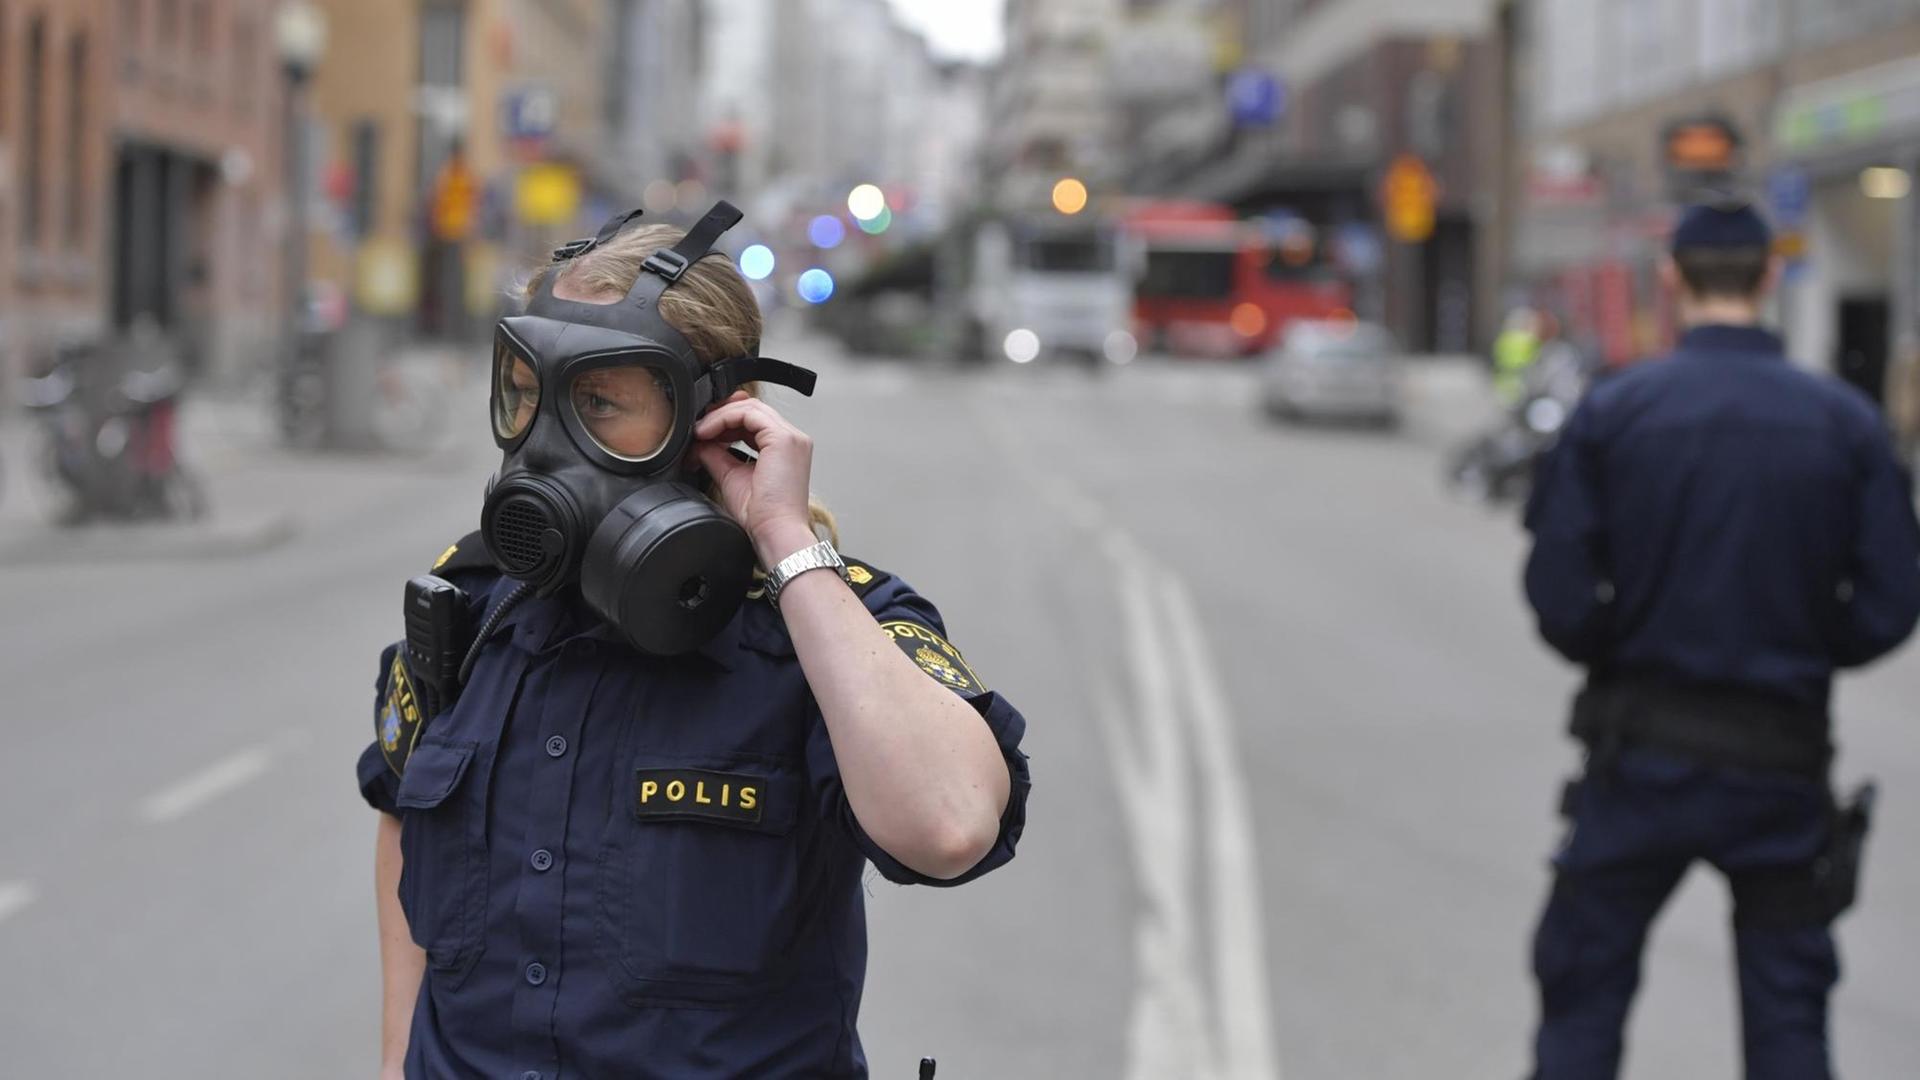 Polizisten stehen in Schutzkleidung in der Nähe des Anschlagsortes in Stockholm.